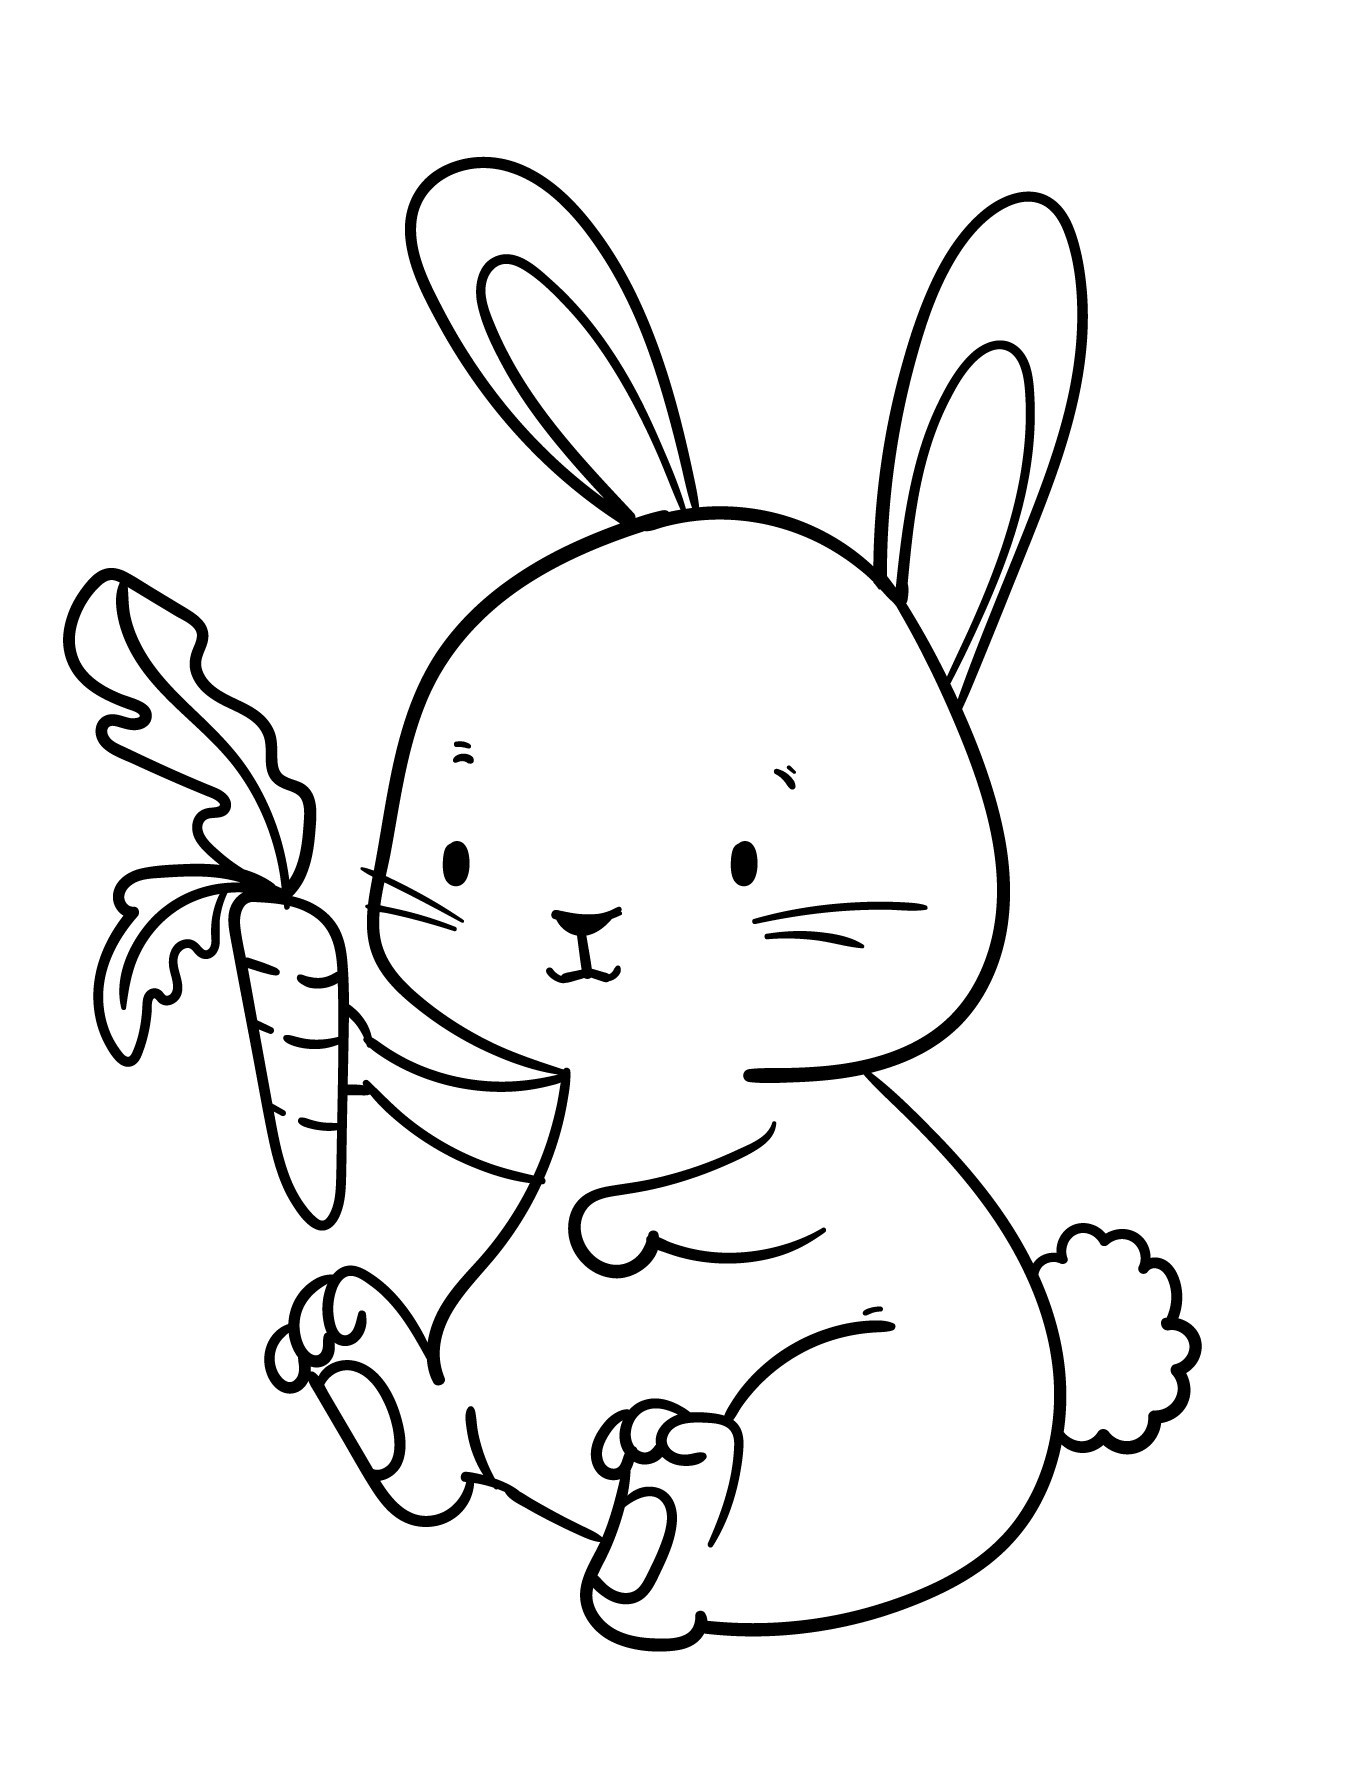 Раскраска для детей: сонный кролик с морковкой